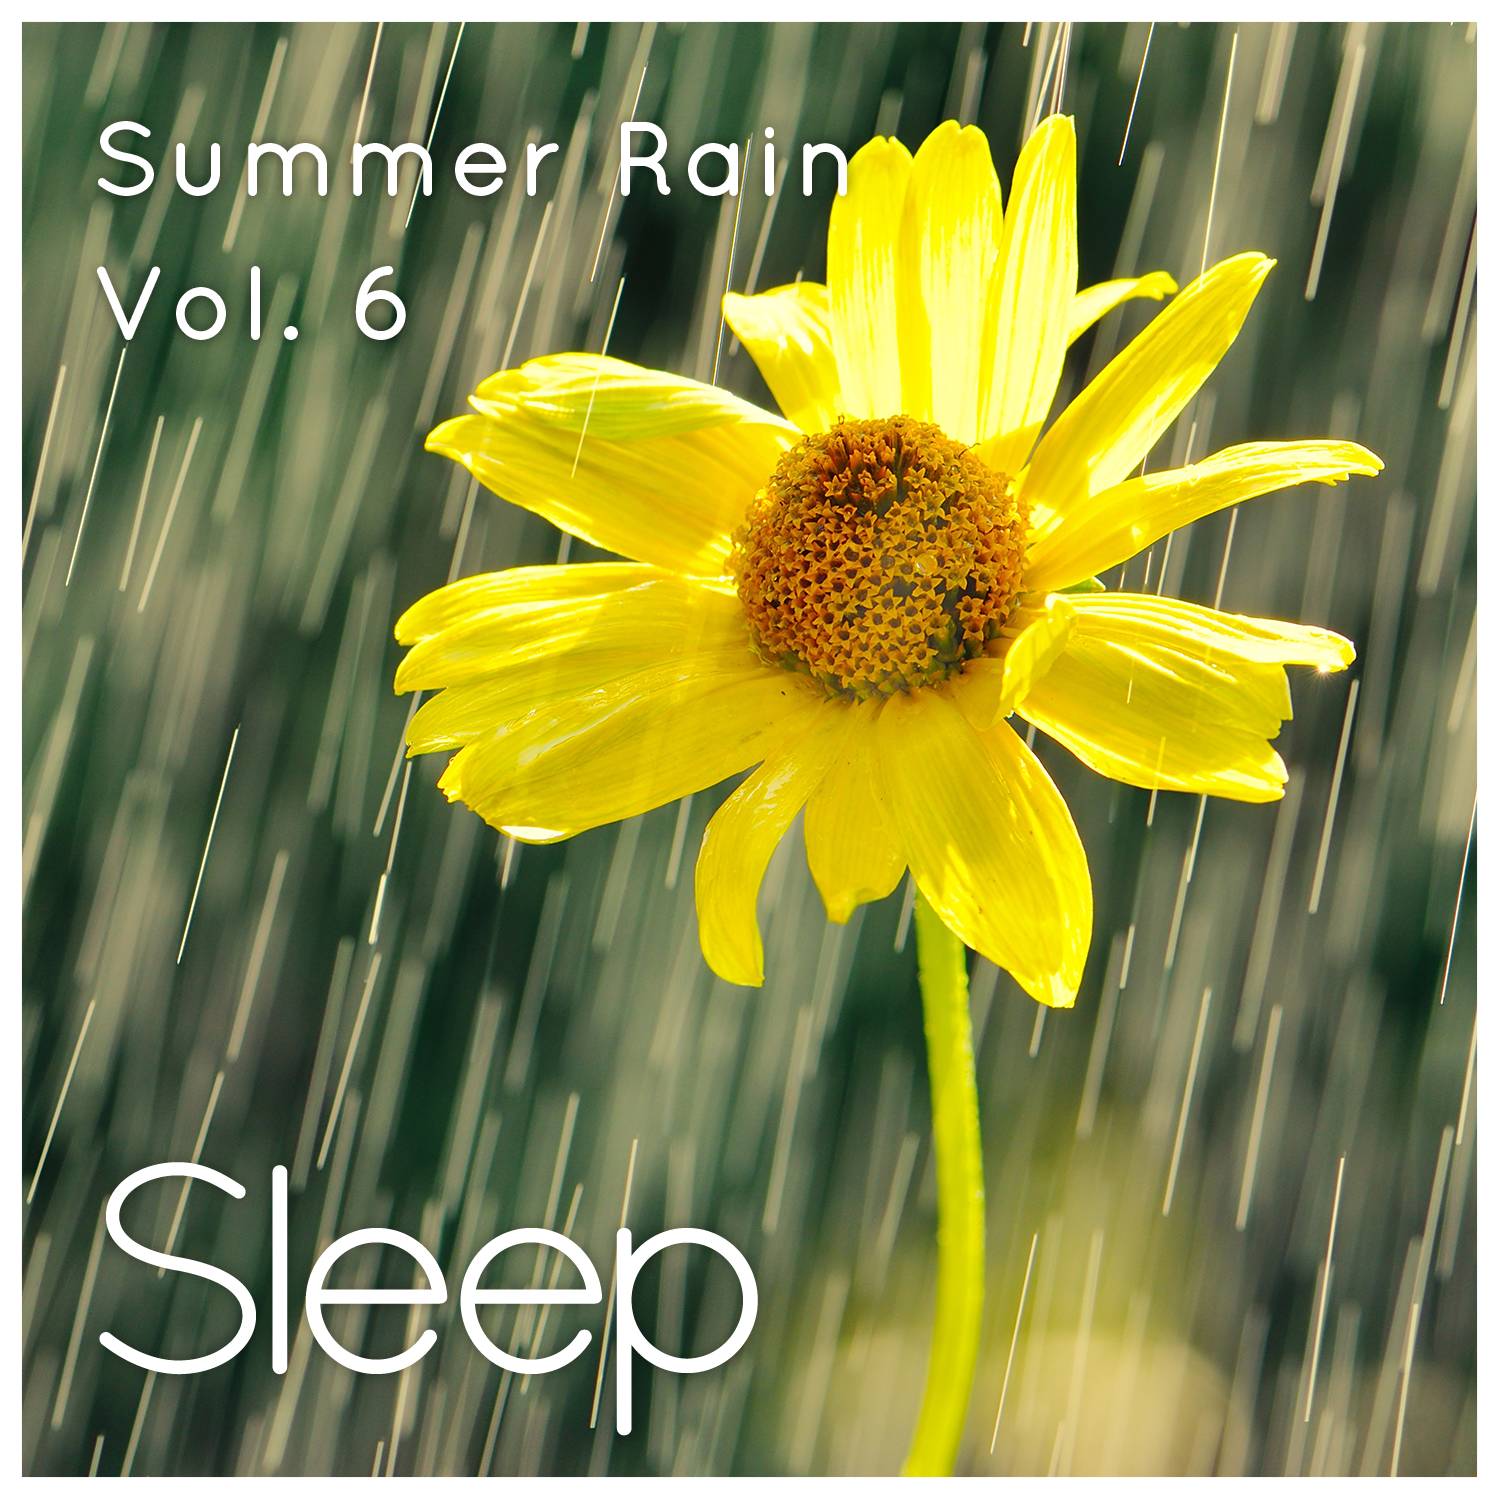 Sleep to Summer Rain, Vol. 6